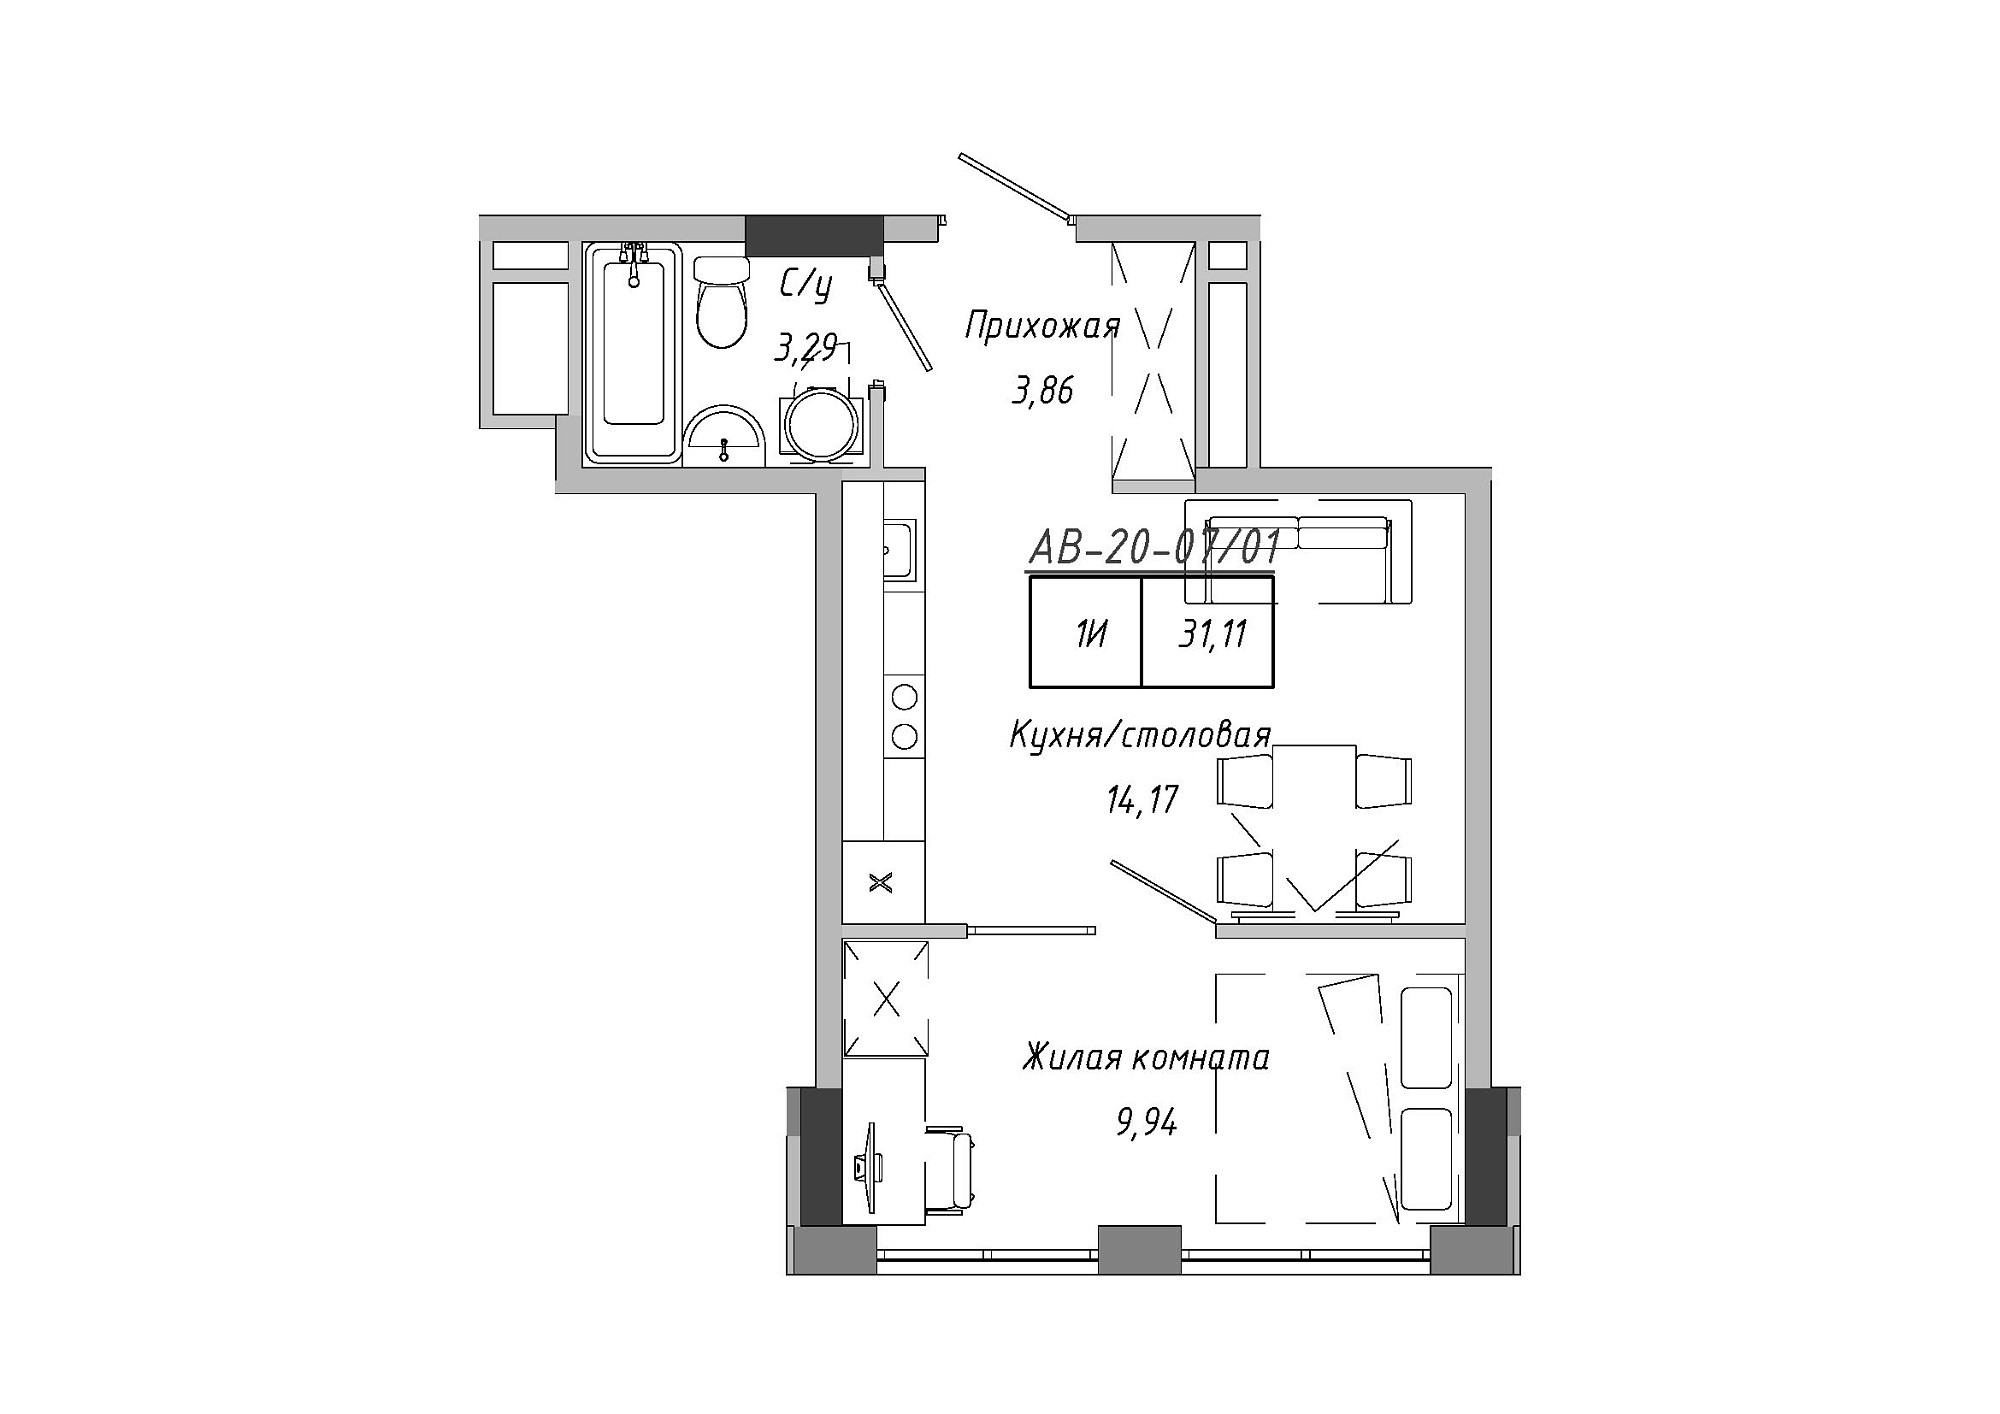 Планировка 1-к квартира площей 30.28м2, AB-20-07/00001.